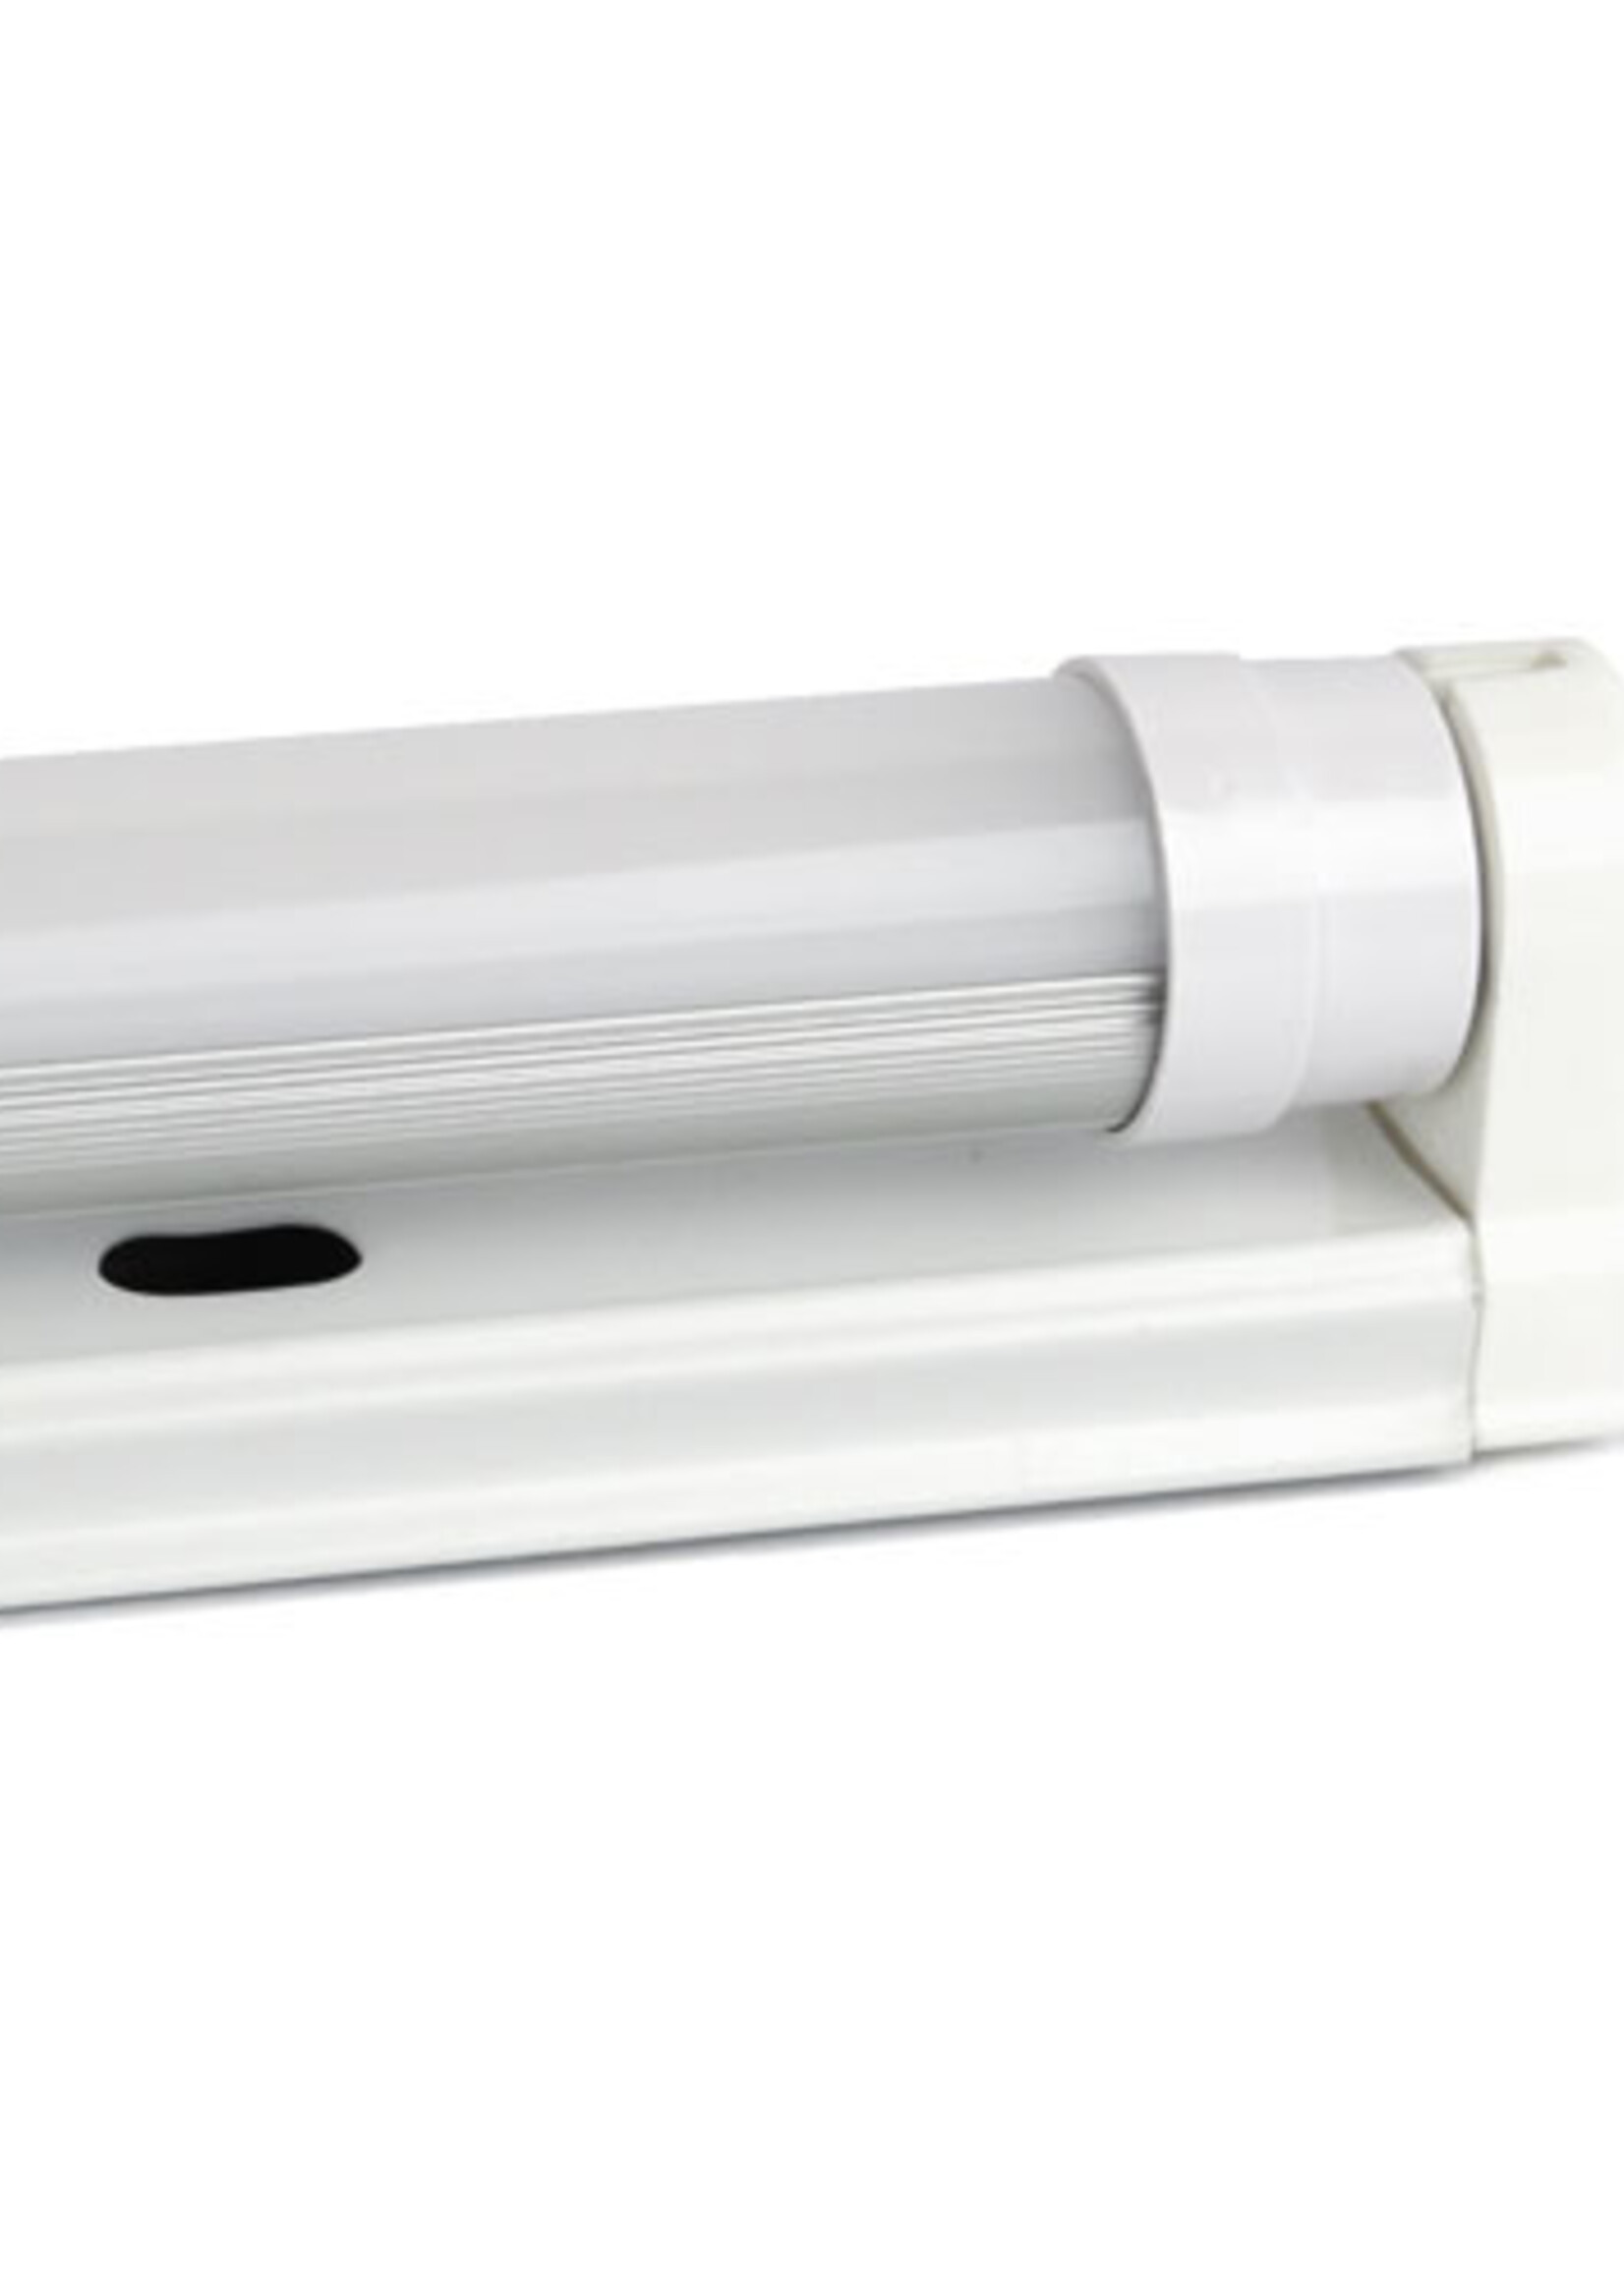 LEDWINKEL-Online LED TL Buis 150cm 25W 140lm/W - Pro High lumen